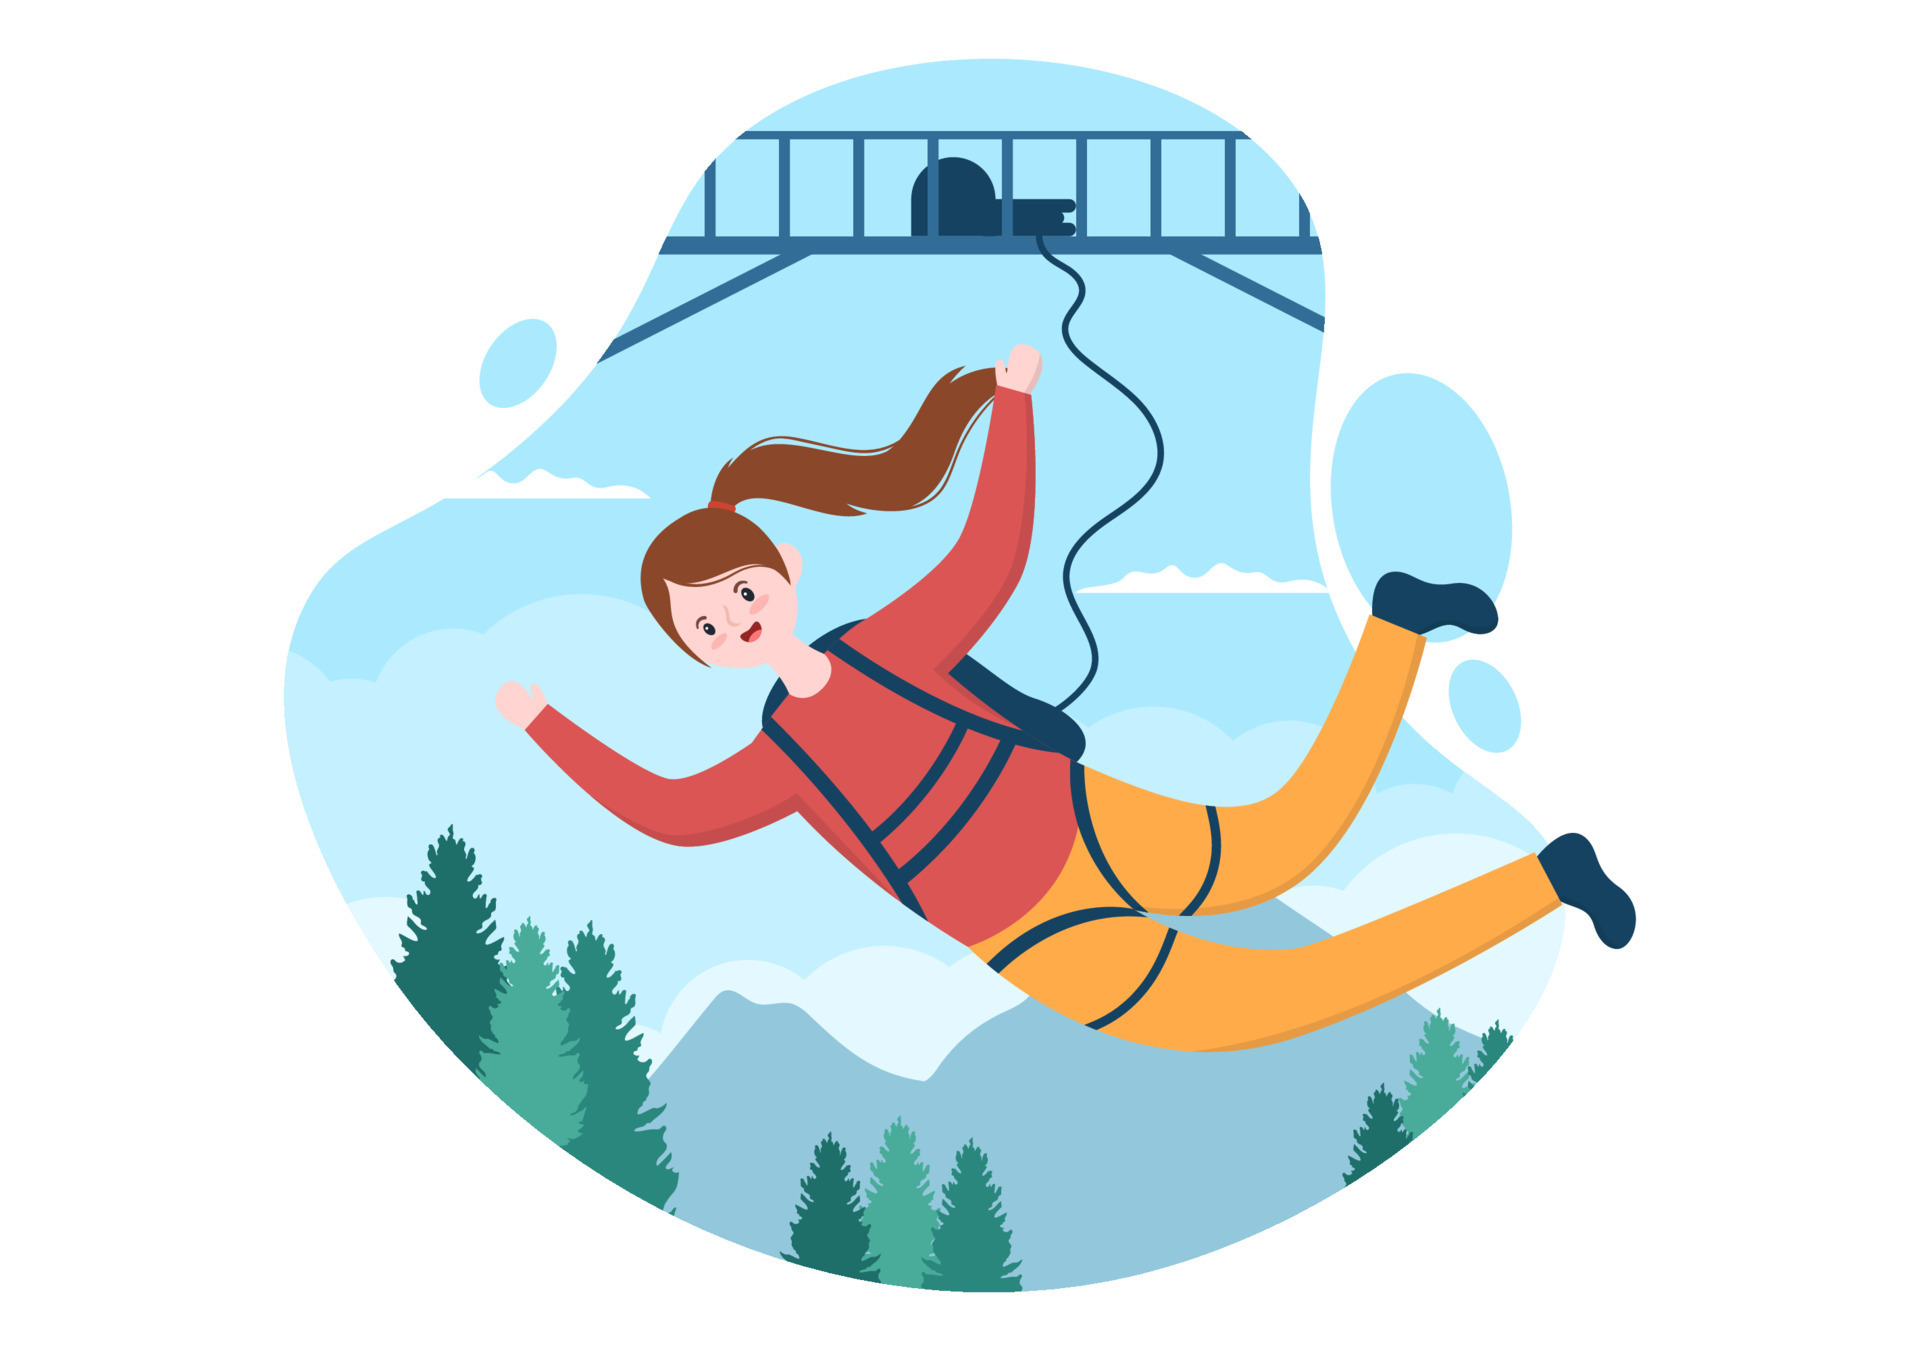 ilustração de bungee jumping com uma pessoa usando uma corda elástica caindo  pulando de uma altura no modelo de vetor de esportes radicais de desenho  animado plano 16638904 Vetor no Vecteezy